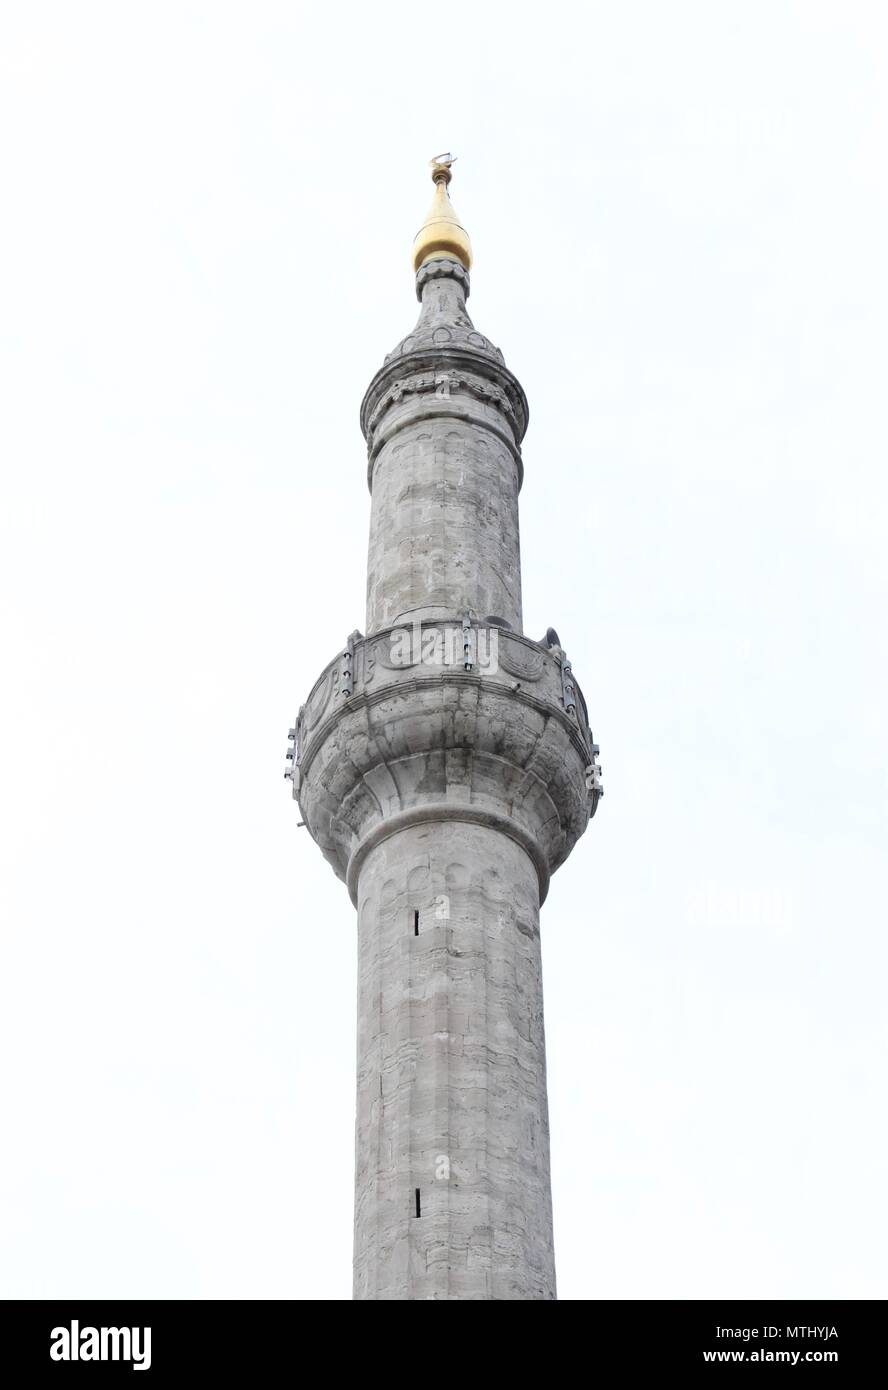 Üsküdar Selimiye Camii Minaresi- Minaret Stock Photo